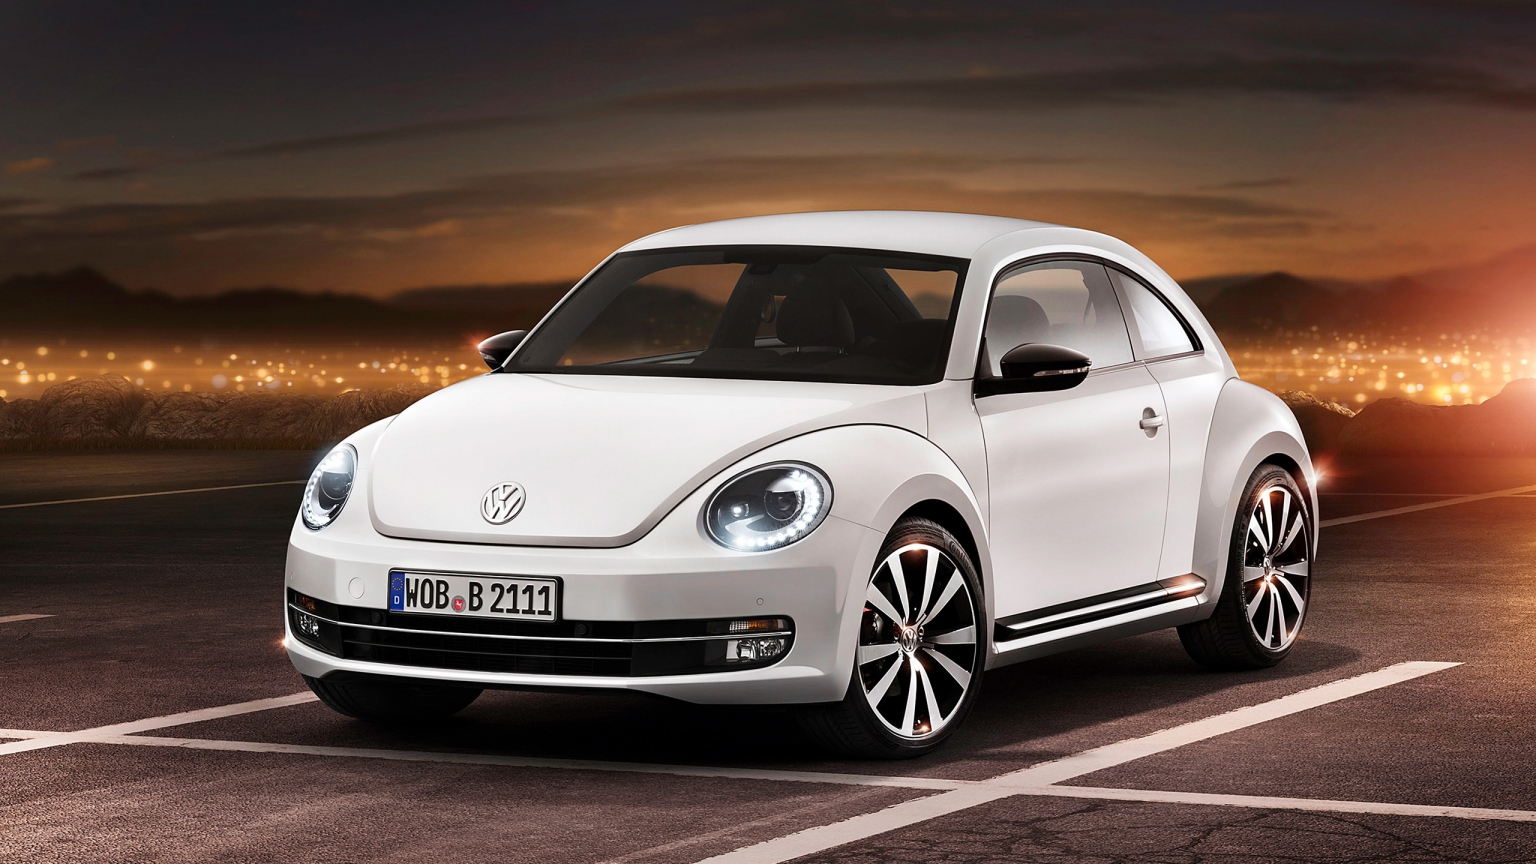 2012 Volkswagen Beetle for 1536 x 864 HDTV resolution